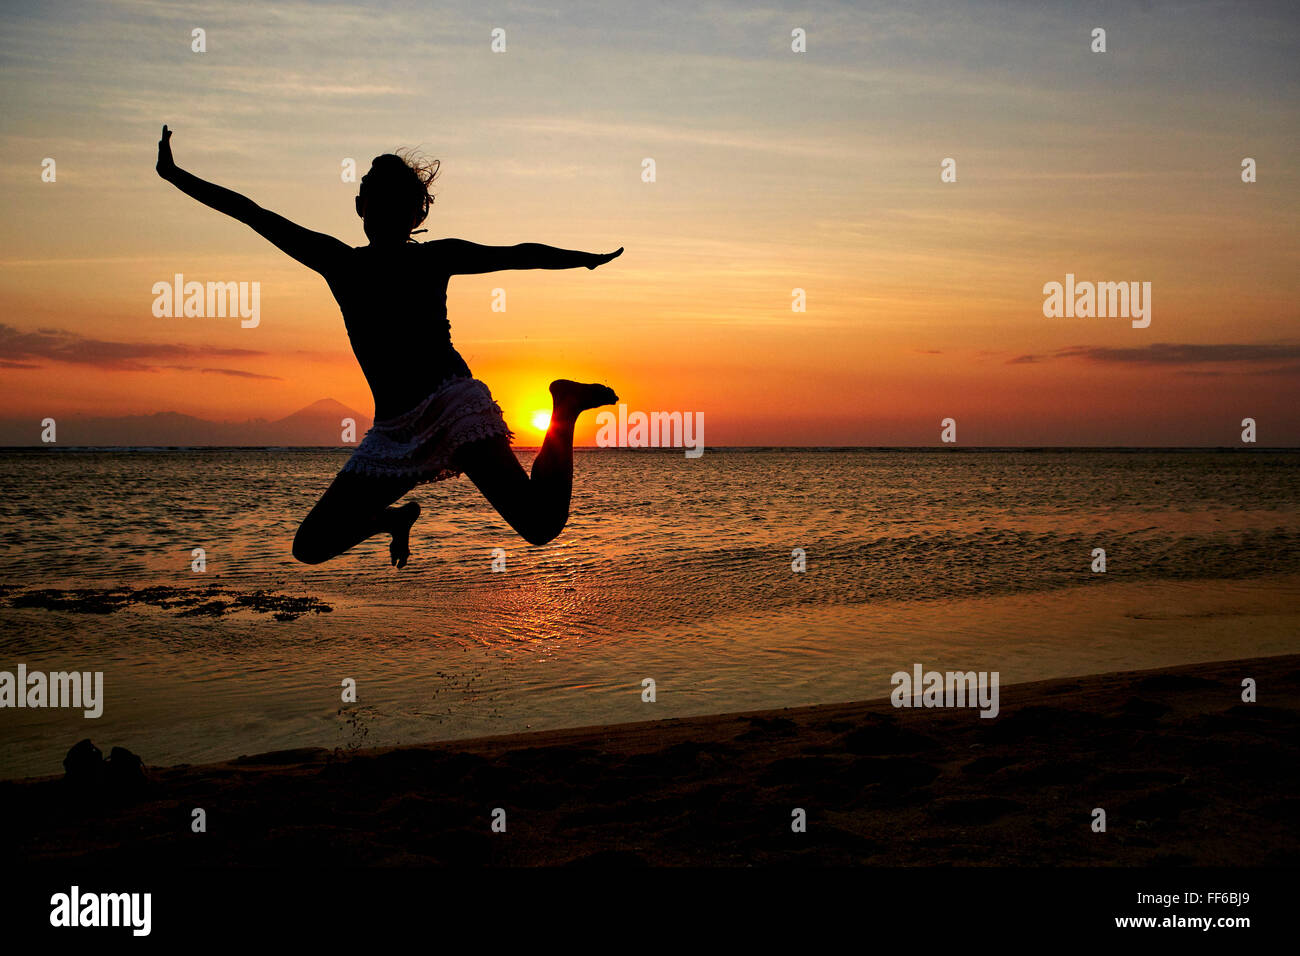 Silhouette einer Frau, die einen Sprung in der Luft, vor einem Sonnenuntergang Himmel gesehen. Stockfoto